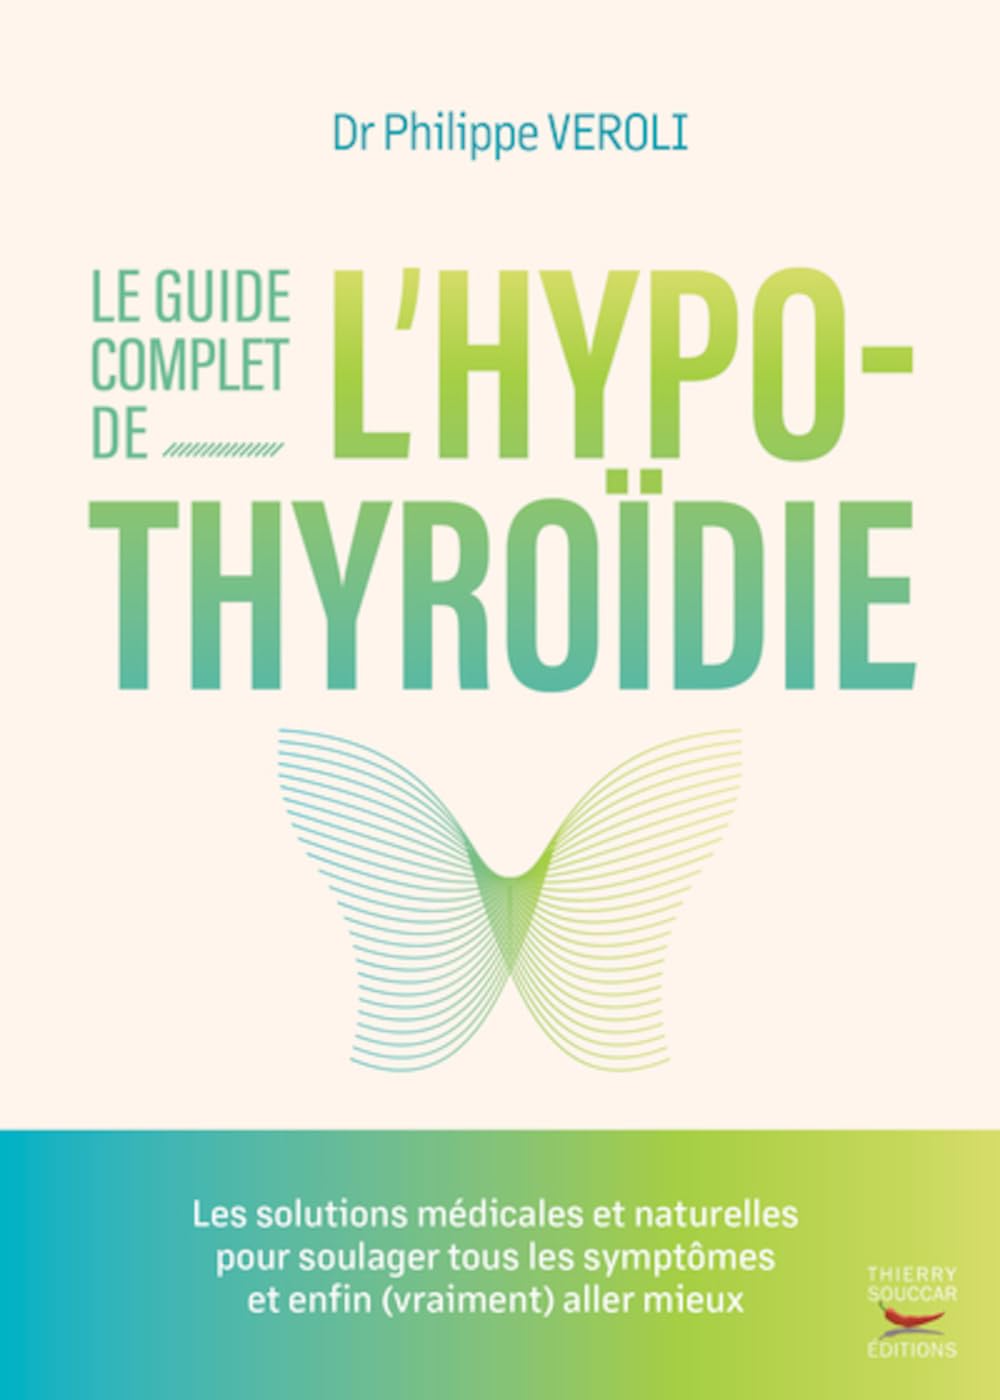 Le guide complet de l'hypothyroïdie    - Thierry Souccar Ed. - Livre - 